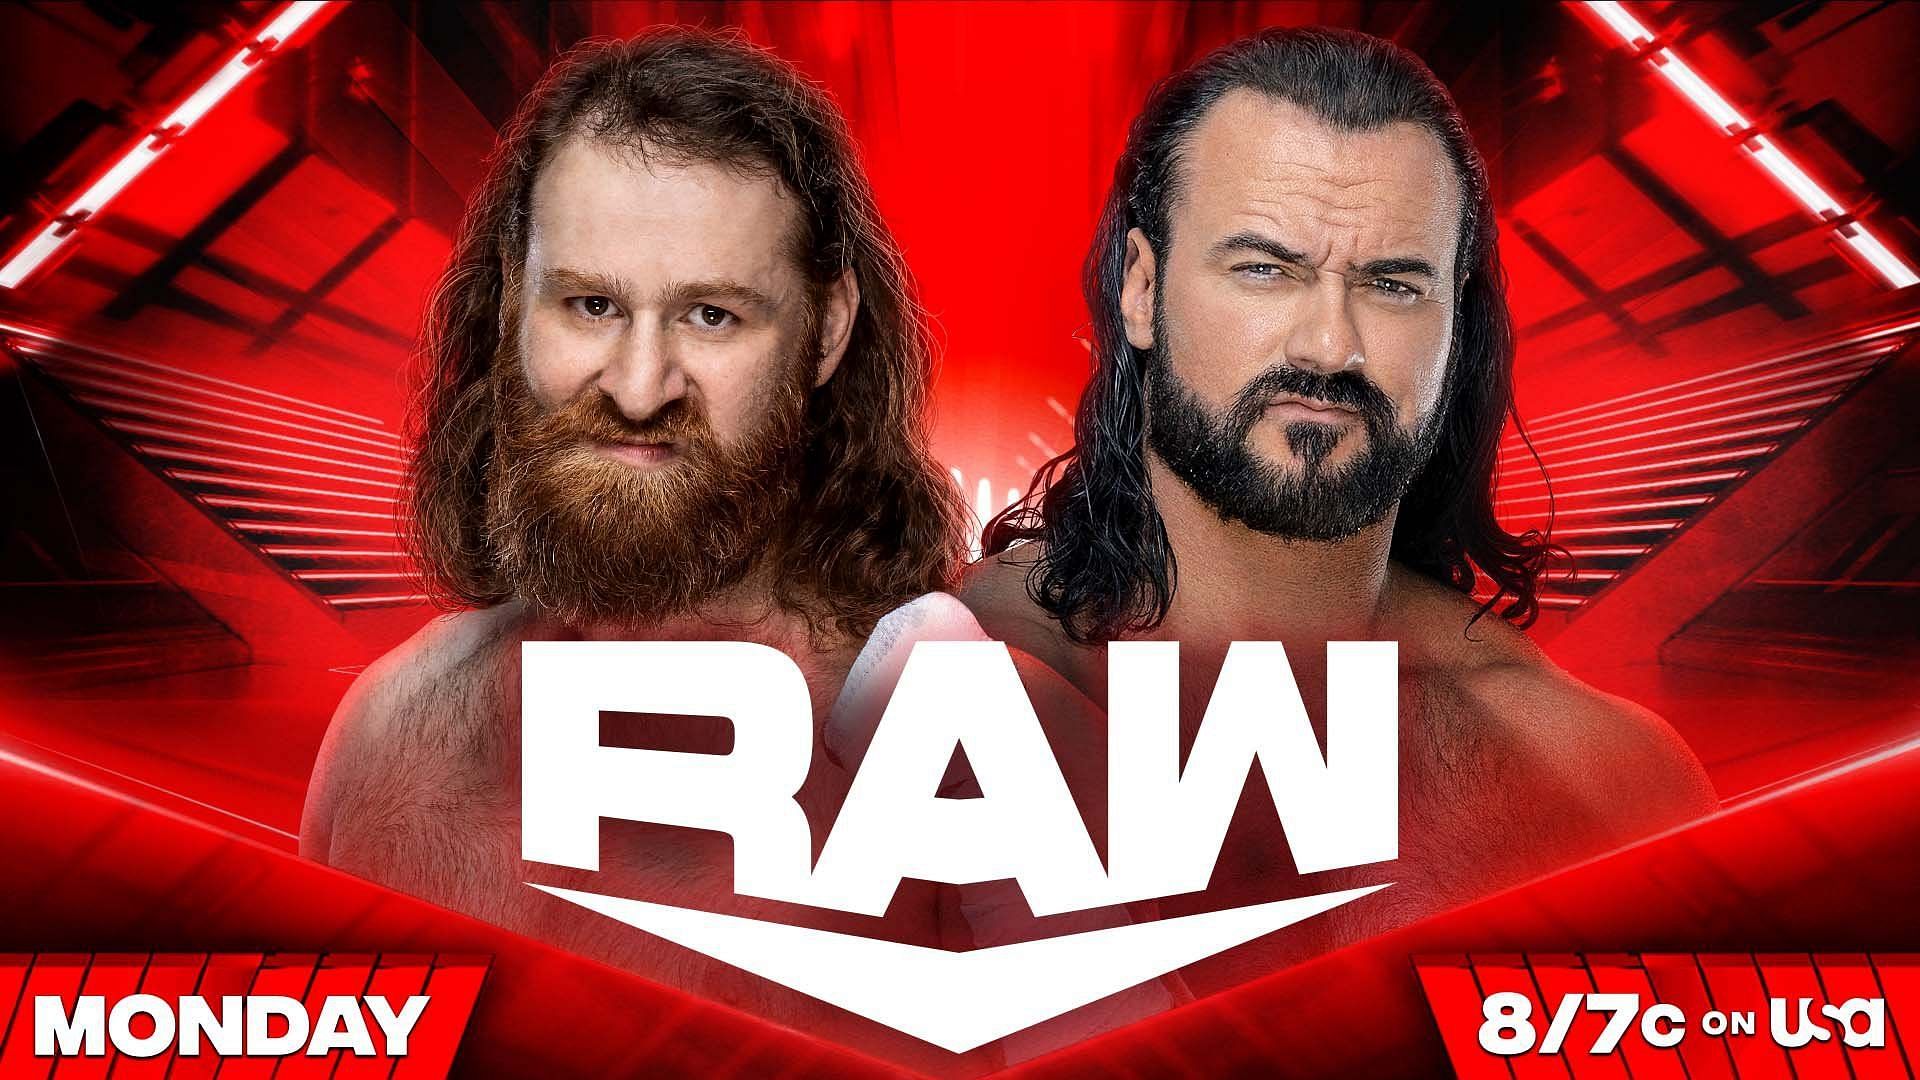 Sami Zayn will battle Drew McIntyre on WWE RAW